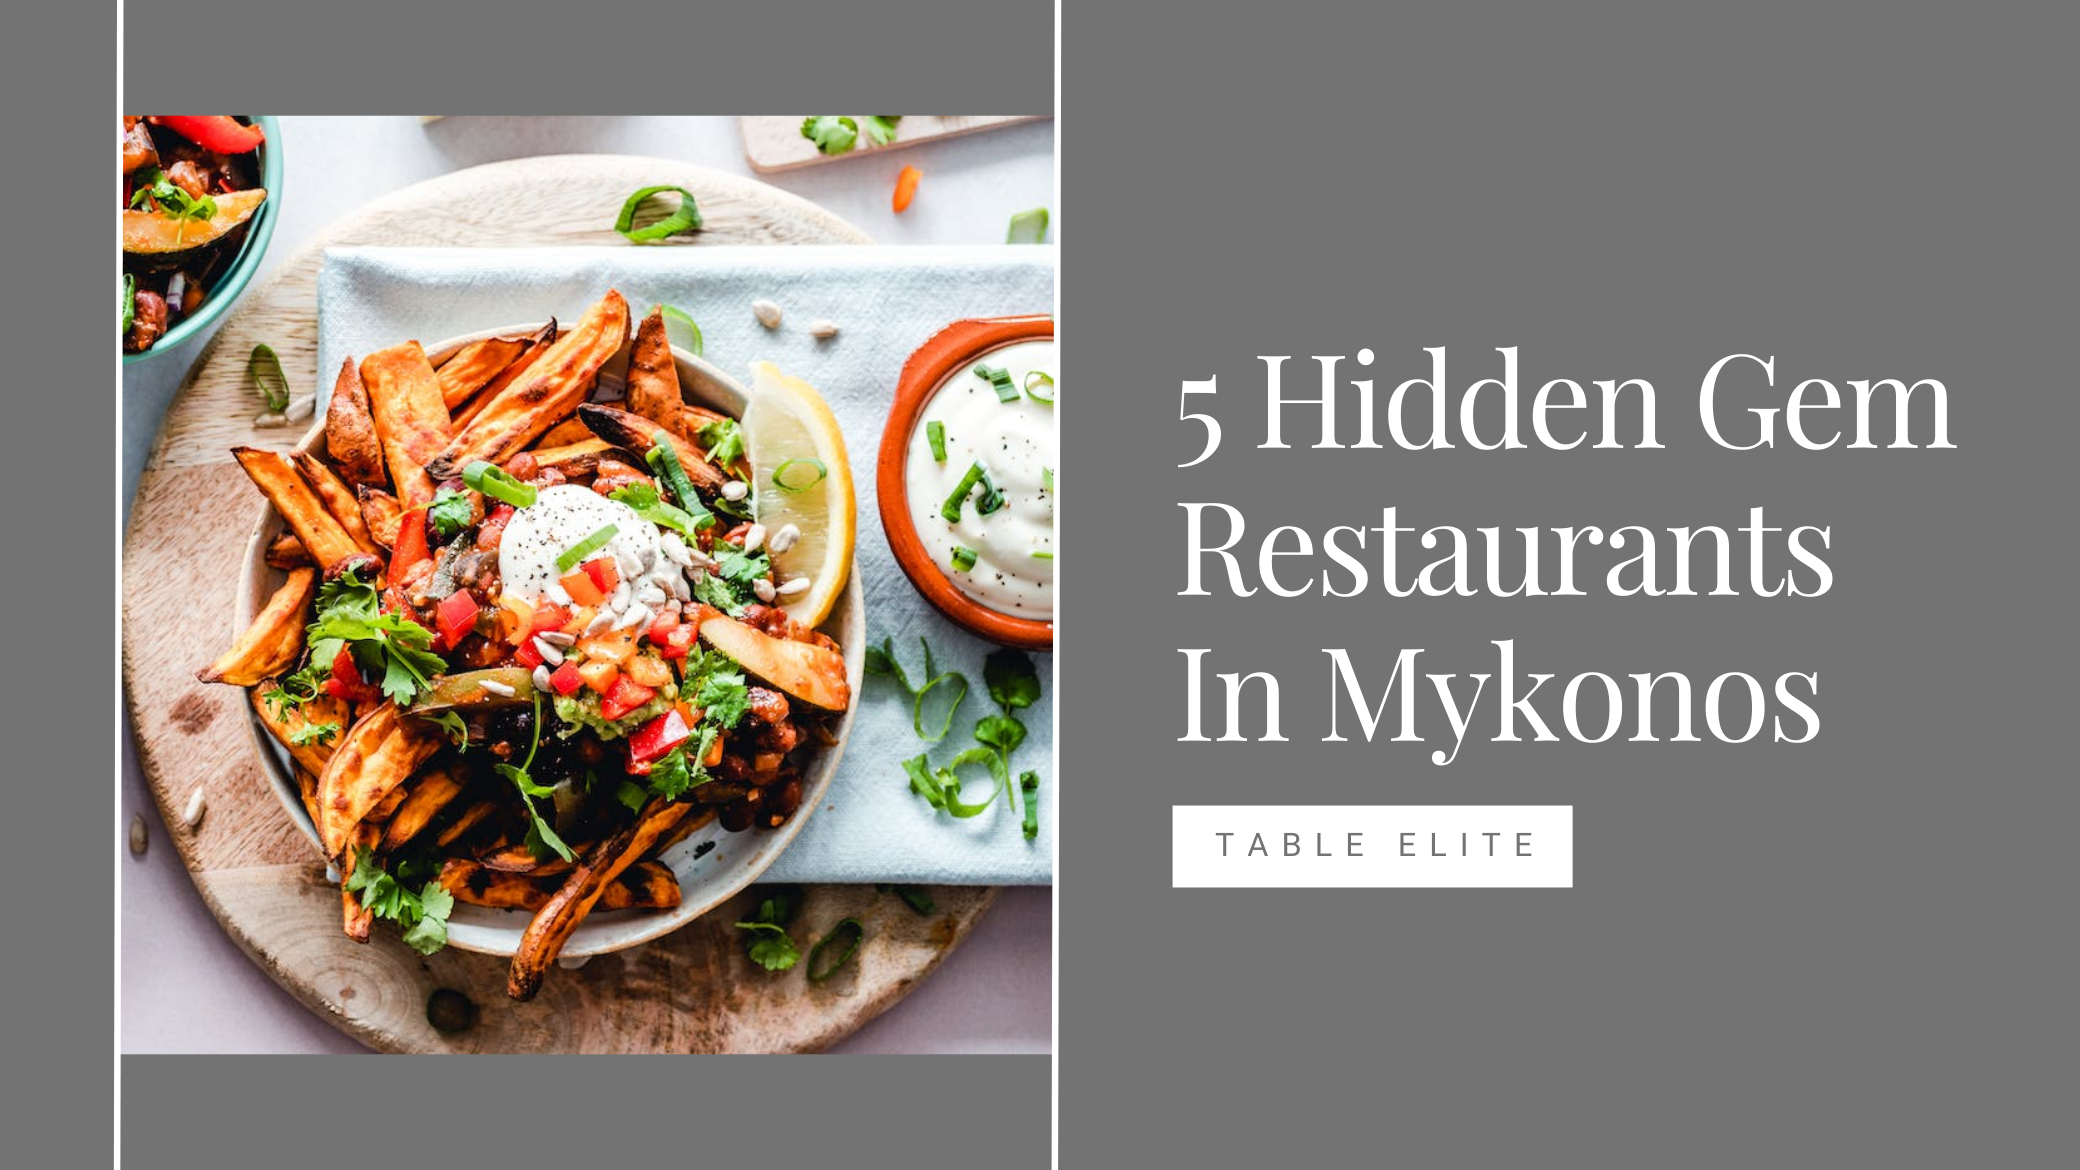 hidden gen restaurants in mykonos